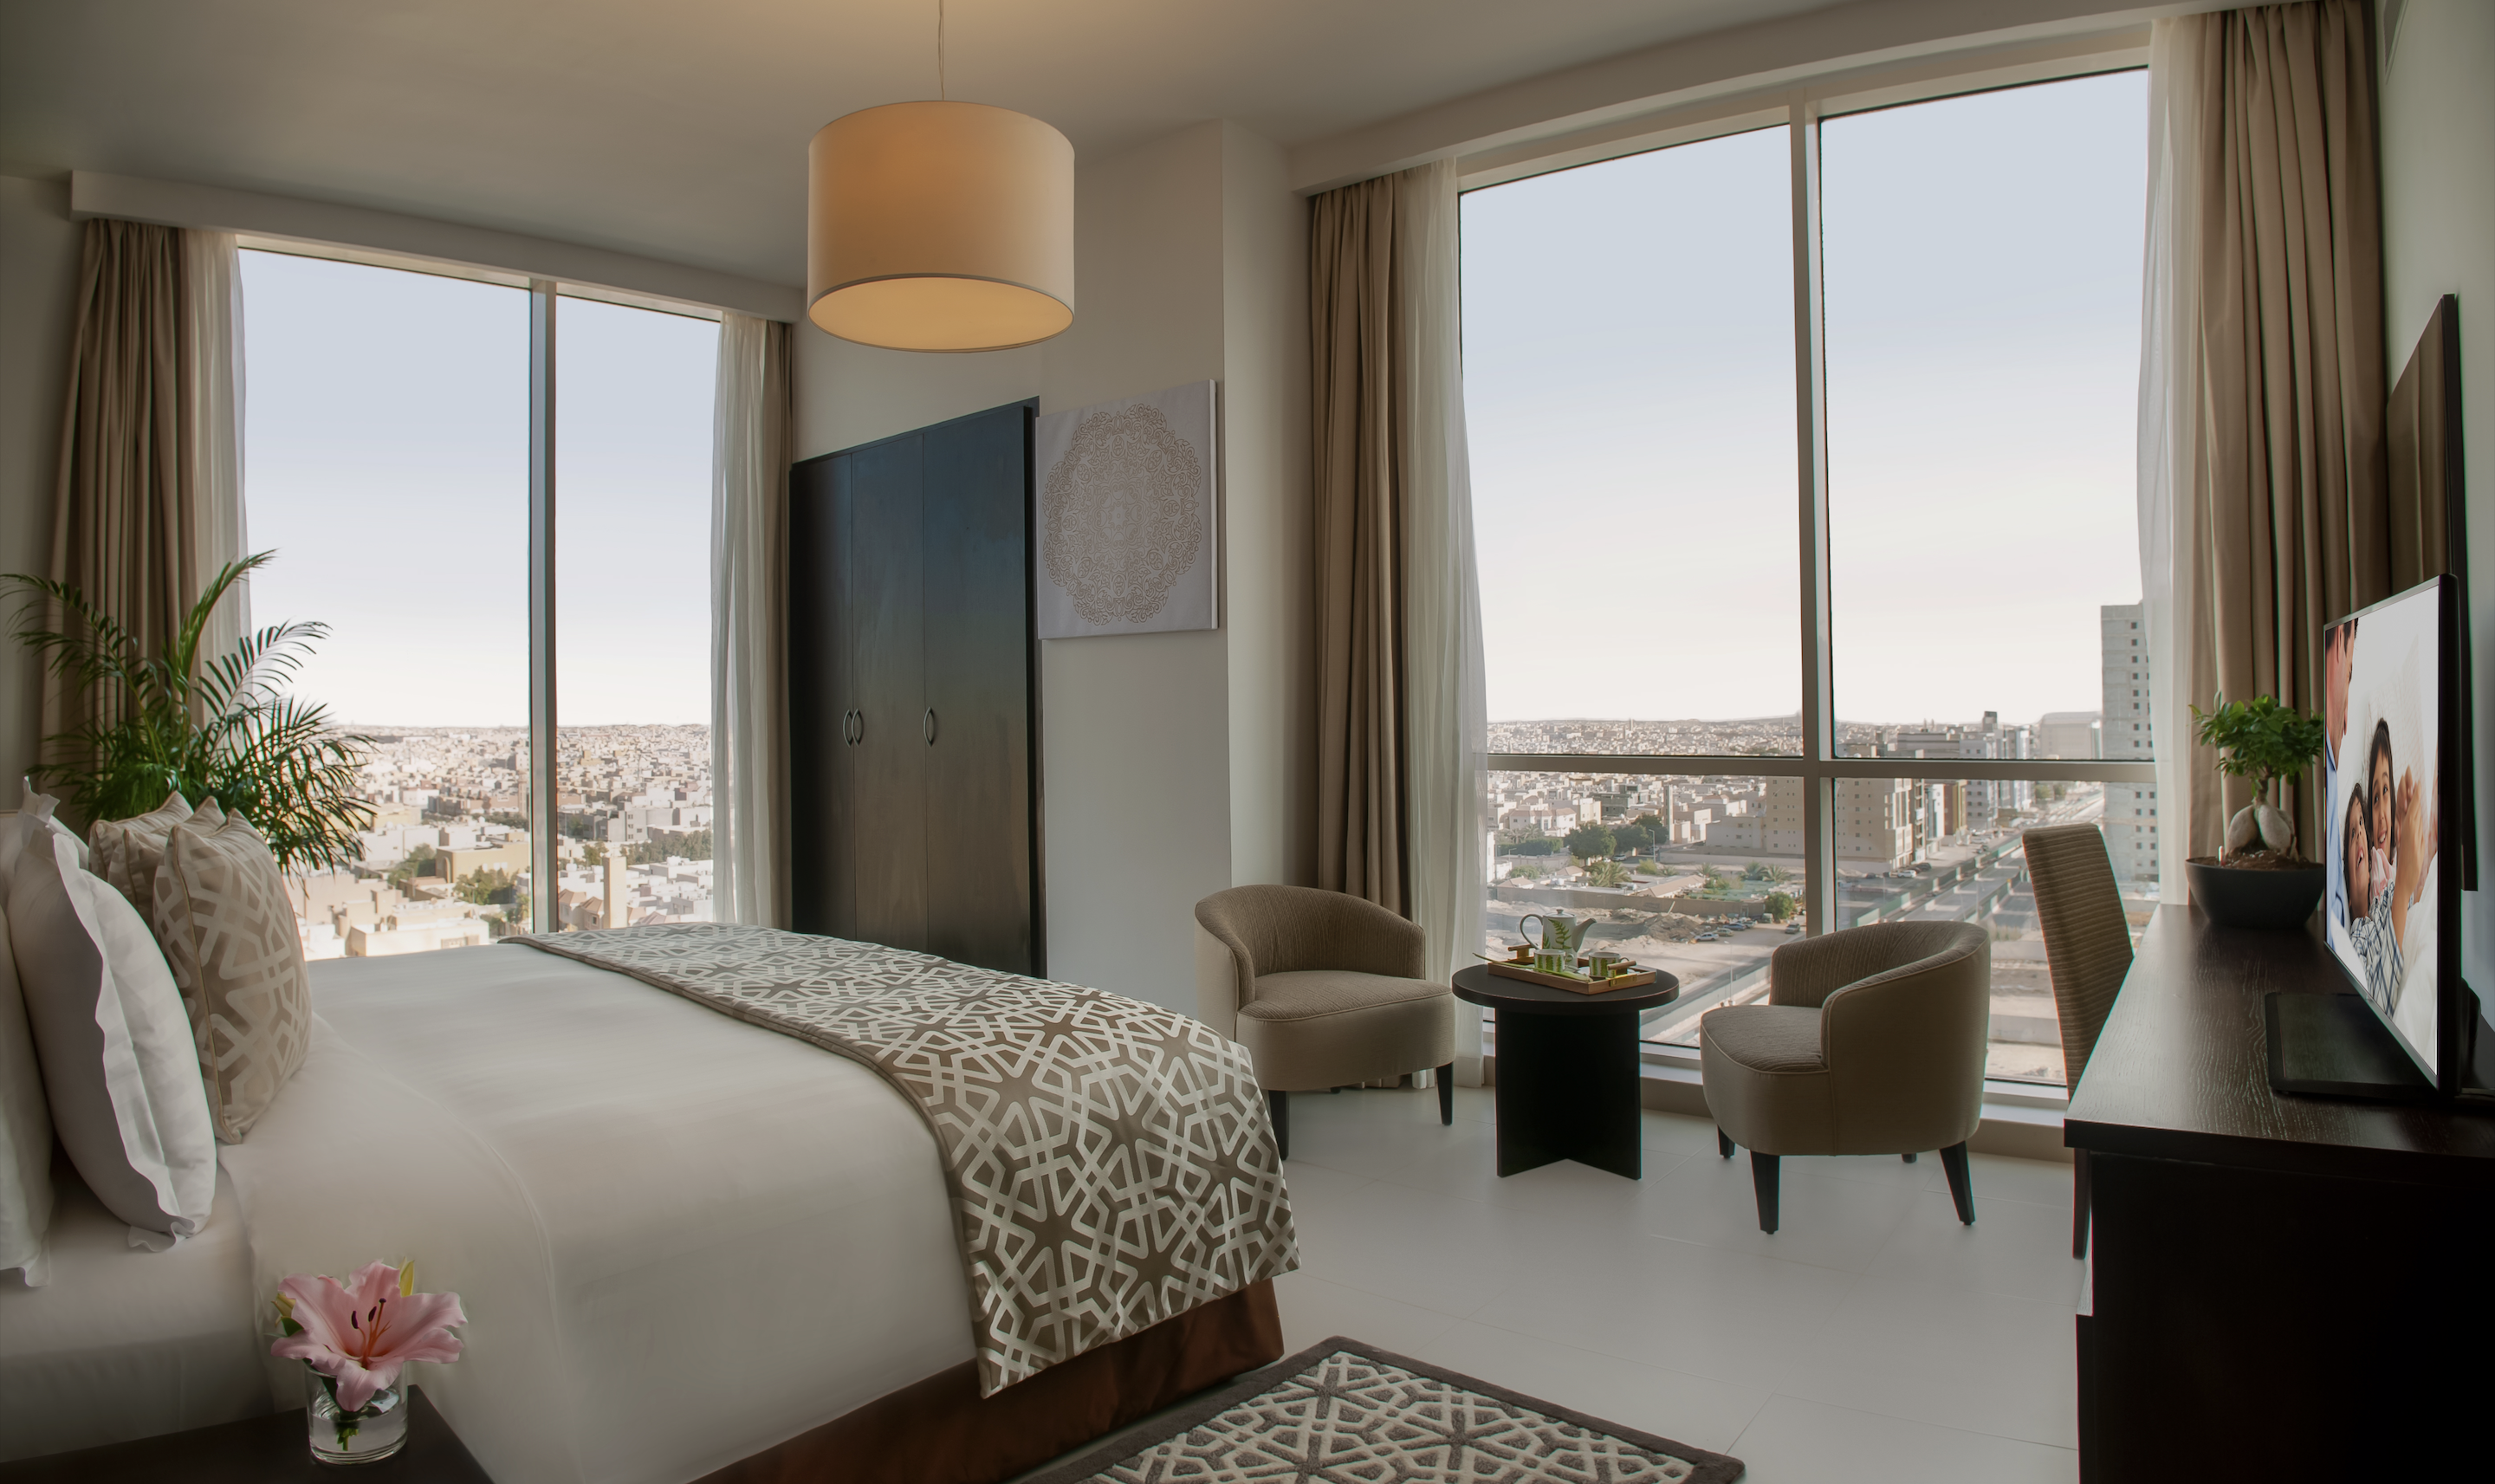 فندق أسكوت رافال العُليا الرياض يستقبل زوّار مهرجان “Gamers8” مقدماً خصماً بنسبة تصل إلى 20% على الإقامة 